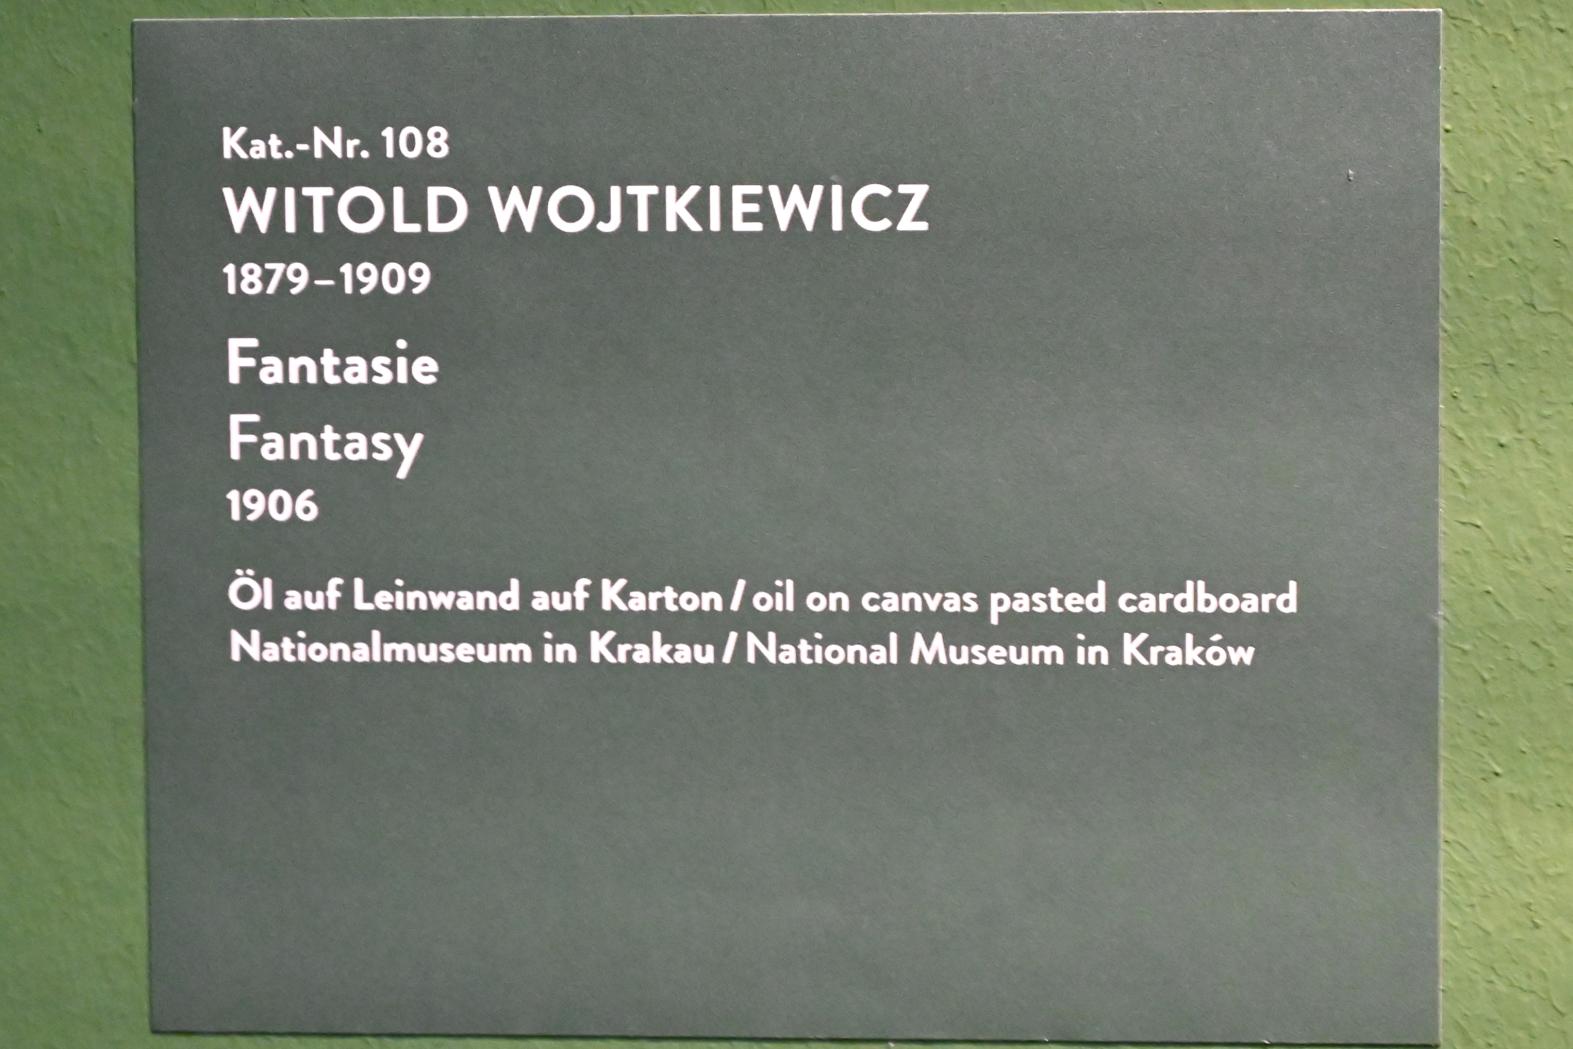 Witold Wojtkiewicz (1904–1909), Fantasie, München, Kunsthalle, Ausstellung "Polnischer Symbolismus um 1900" vom 25.03.-07.08.2022, Saal 10 - Fantastische Welten, 1906, Bild 2/2